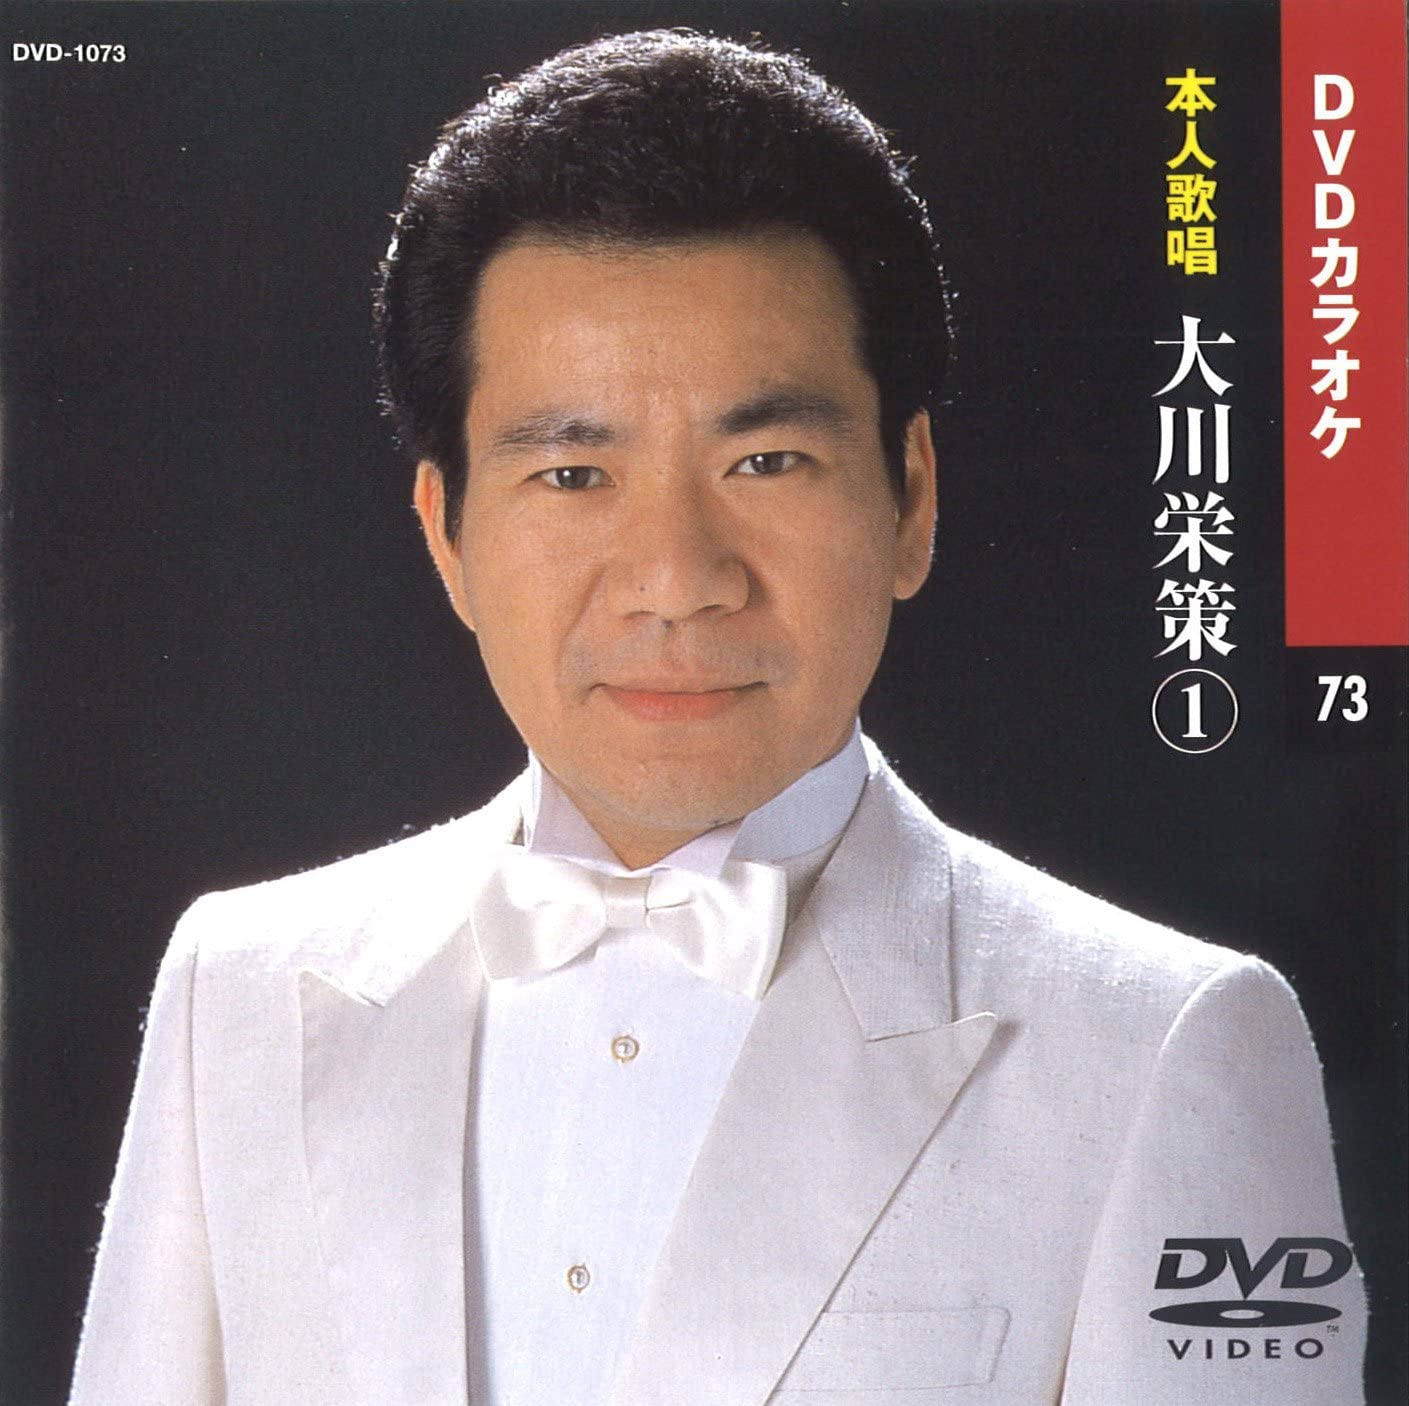  大川栄策 (DVDカラオケ) DVD-1073